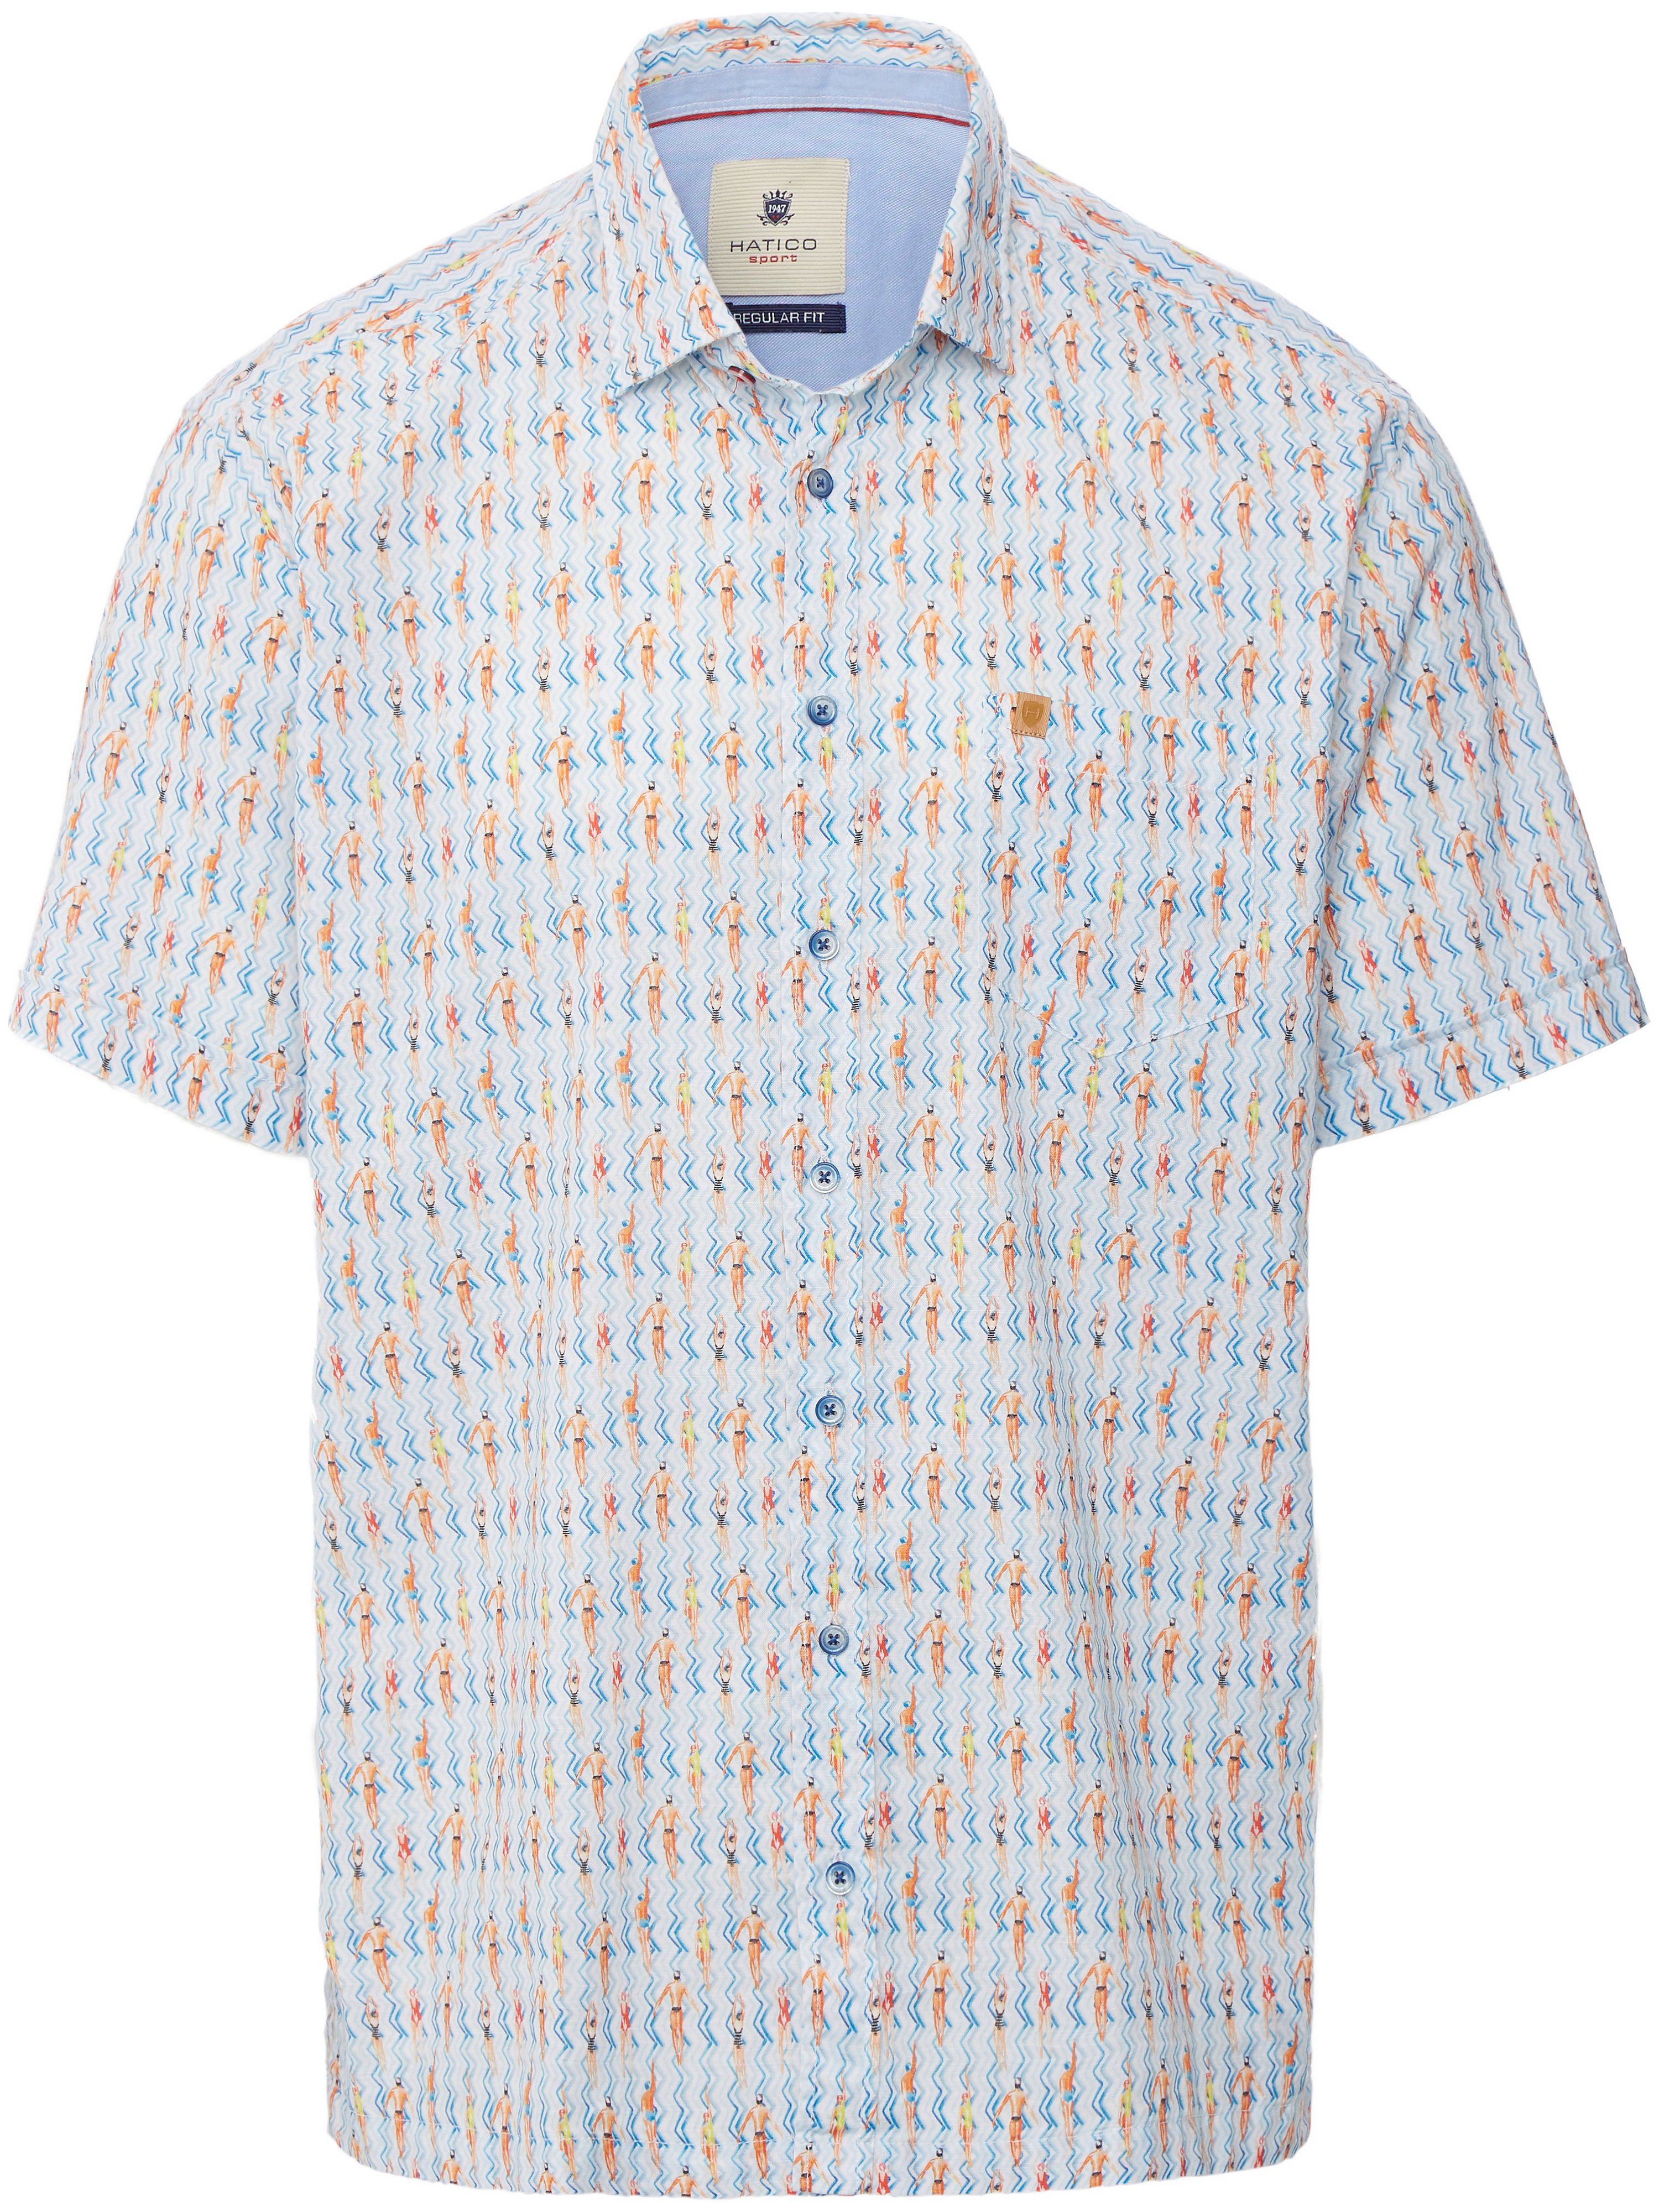 Overhemd 100% katoen Van Hatico Sports blauw